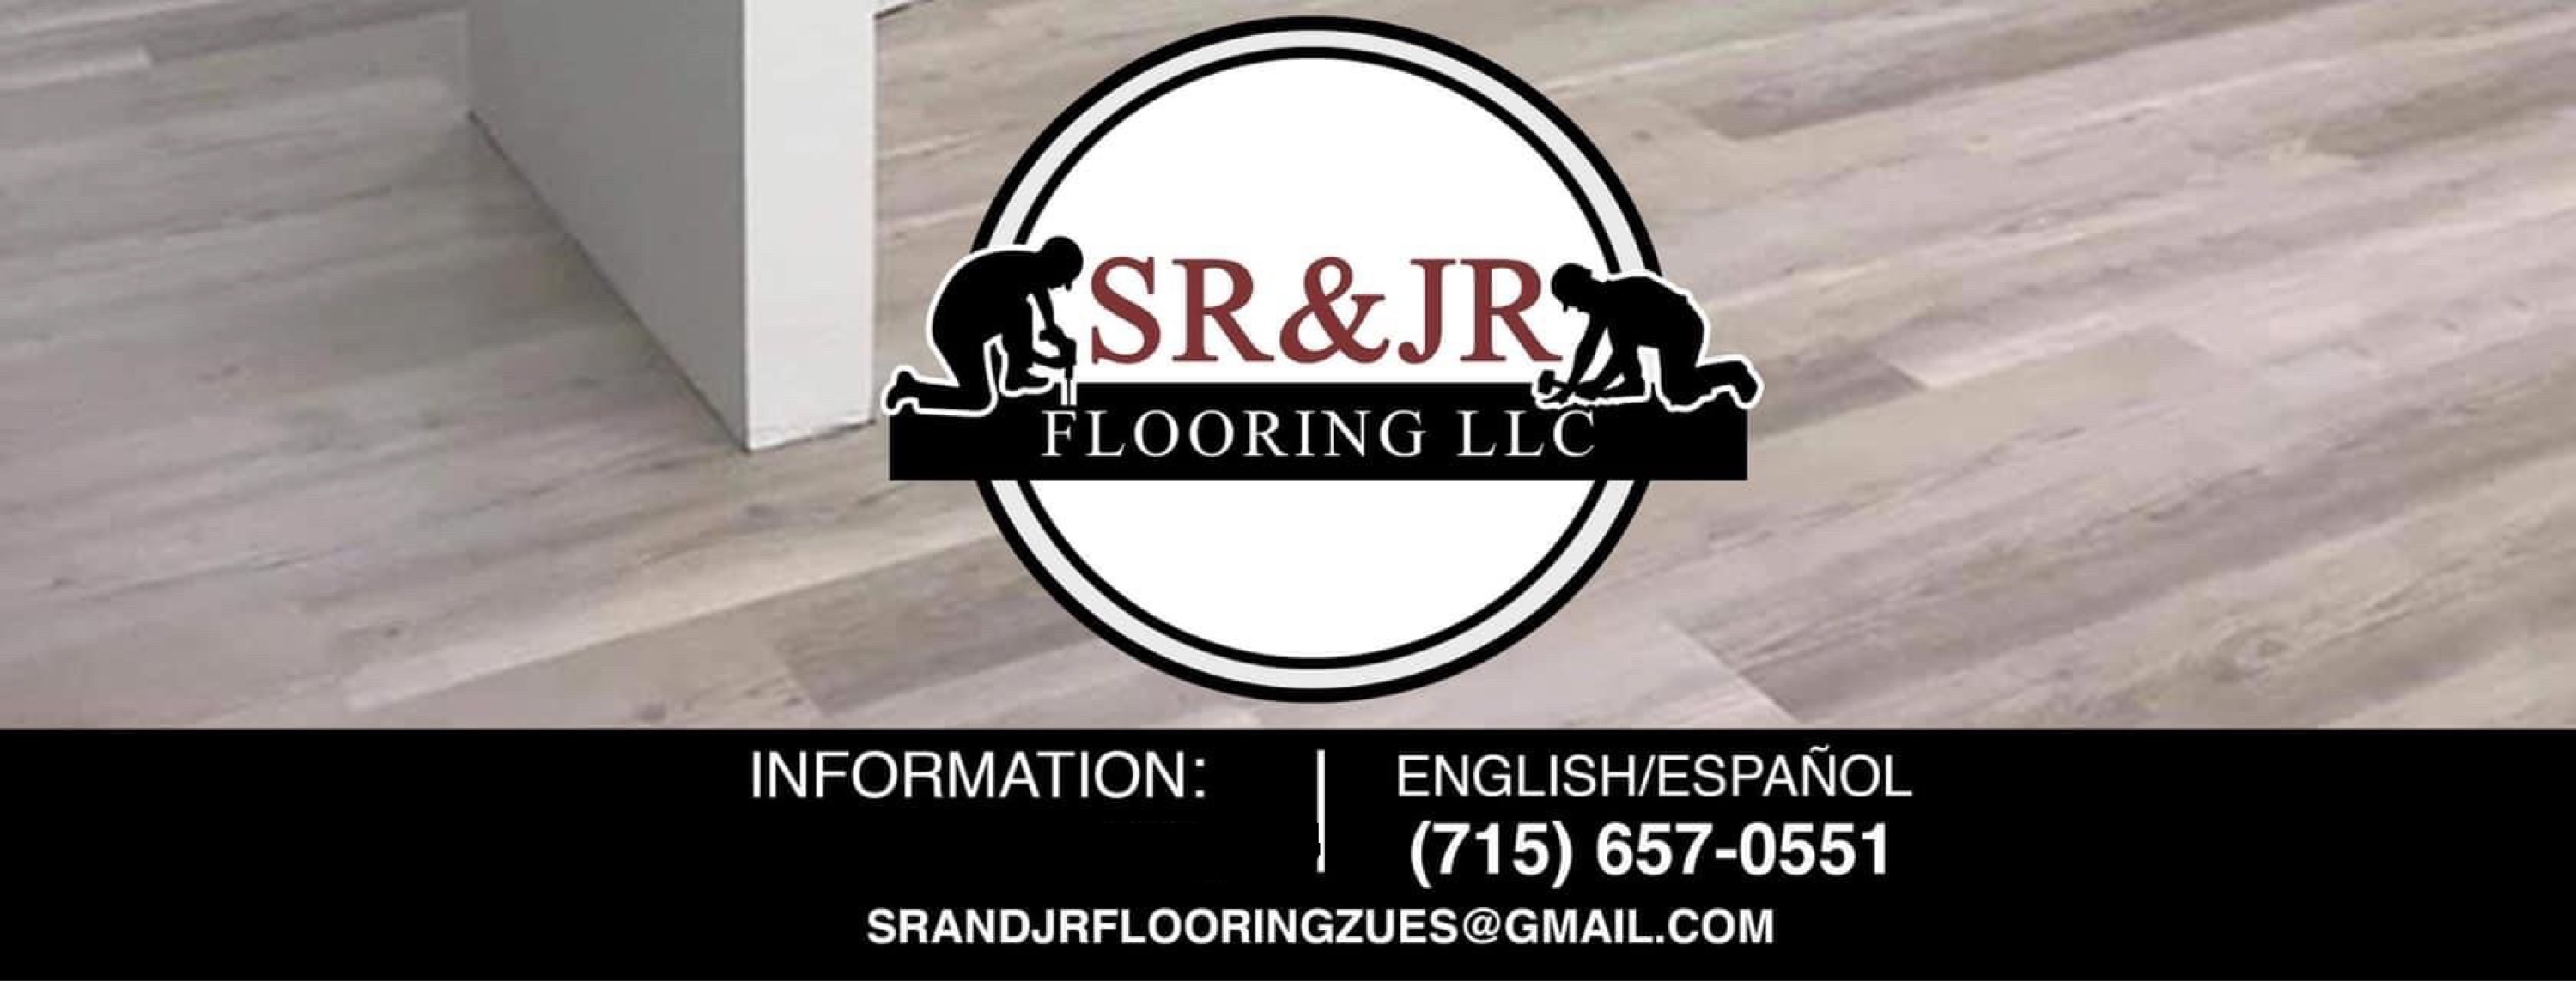 Sr & Jr Flooring, LLC Logo